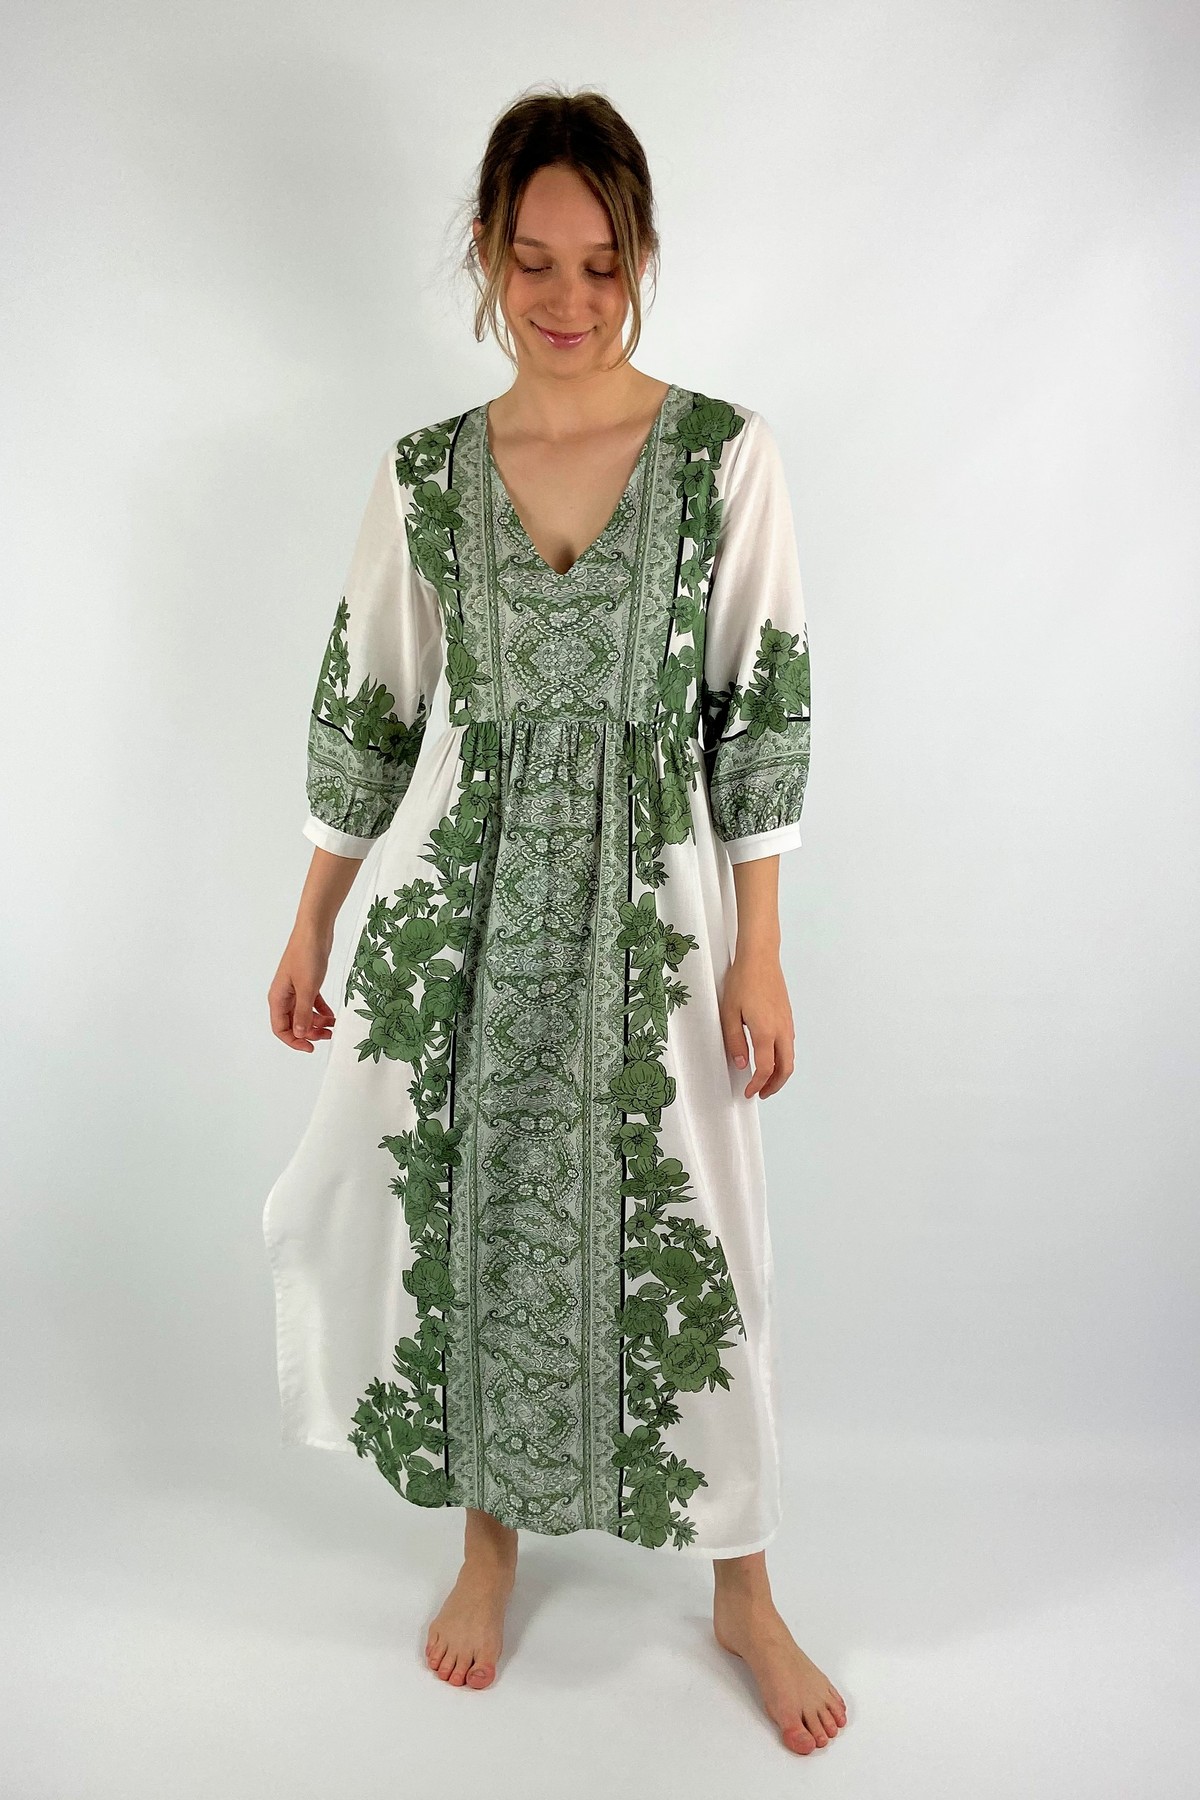 Kleed lang paisley print in de kleur ecru groen van het merk Justeve